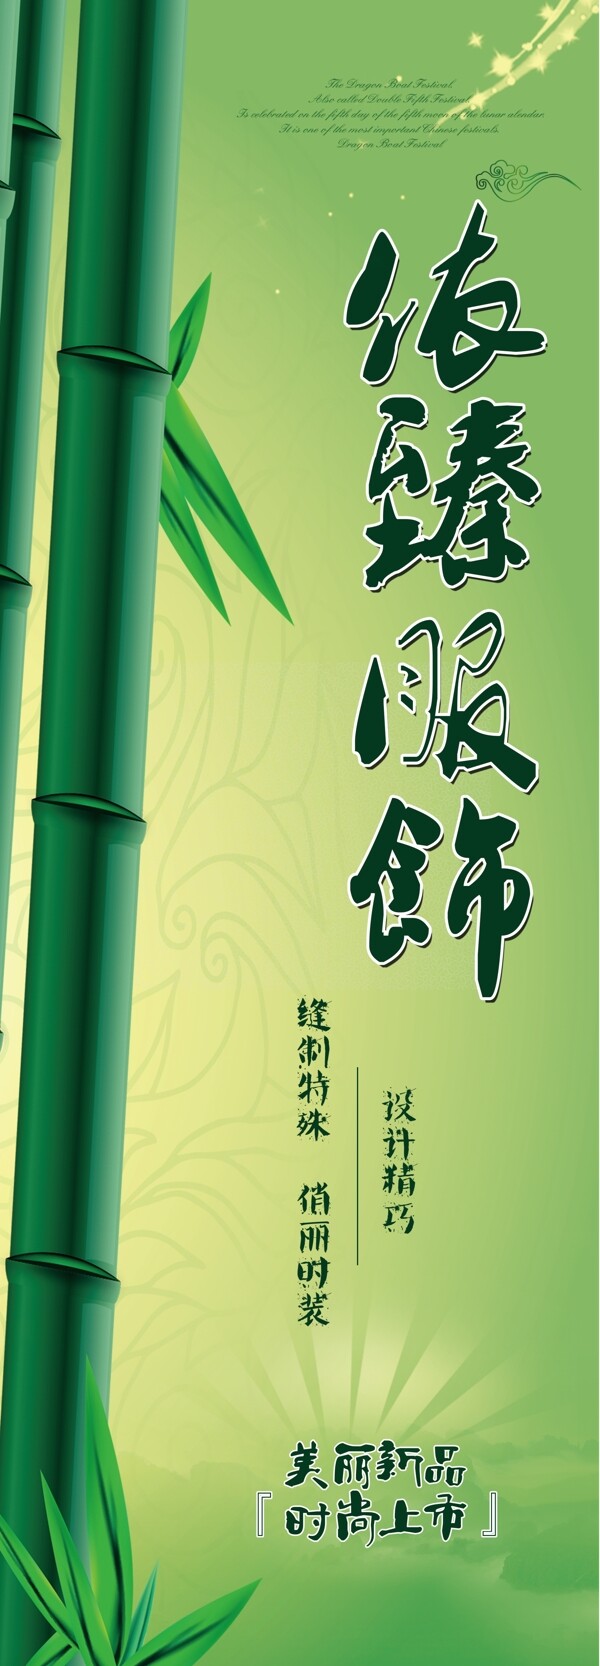 竹子服饰广告图片